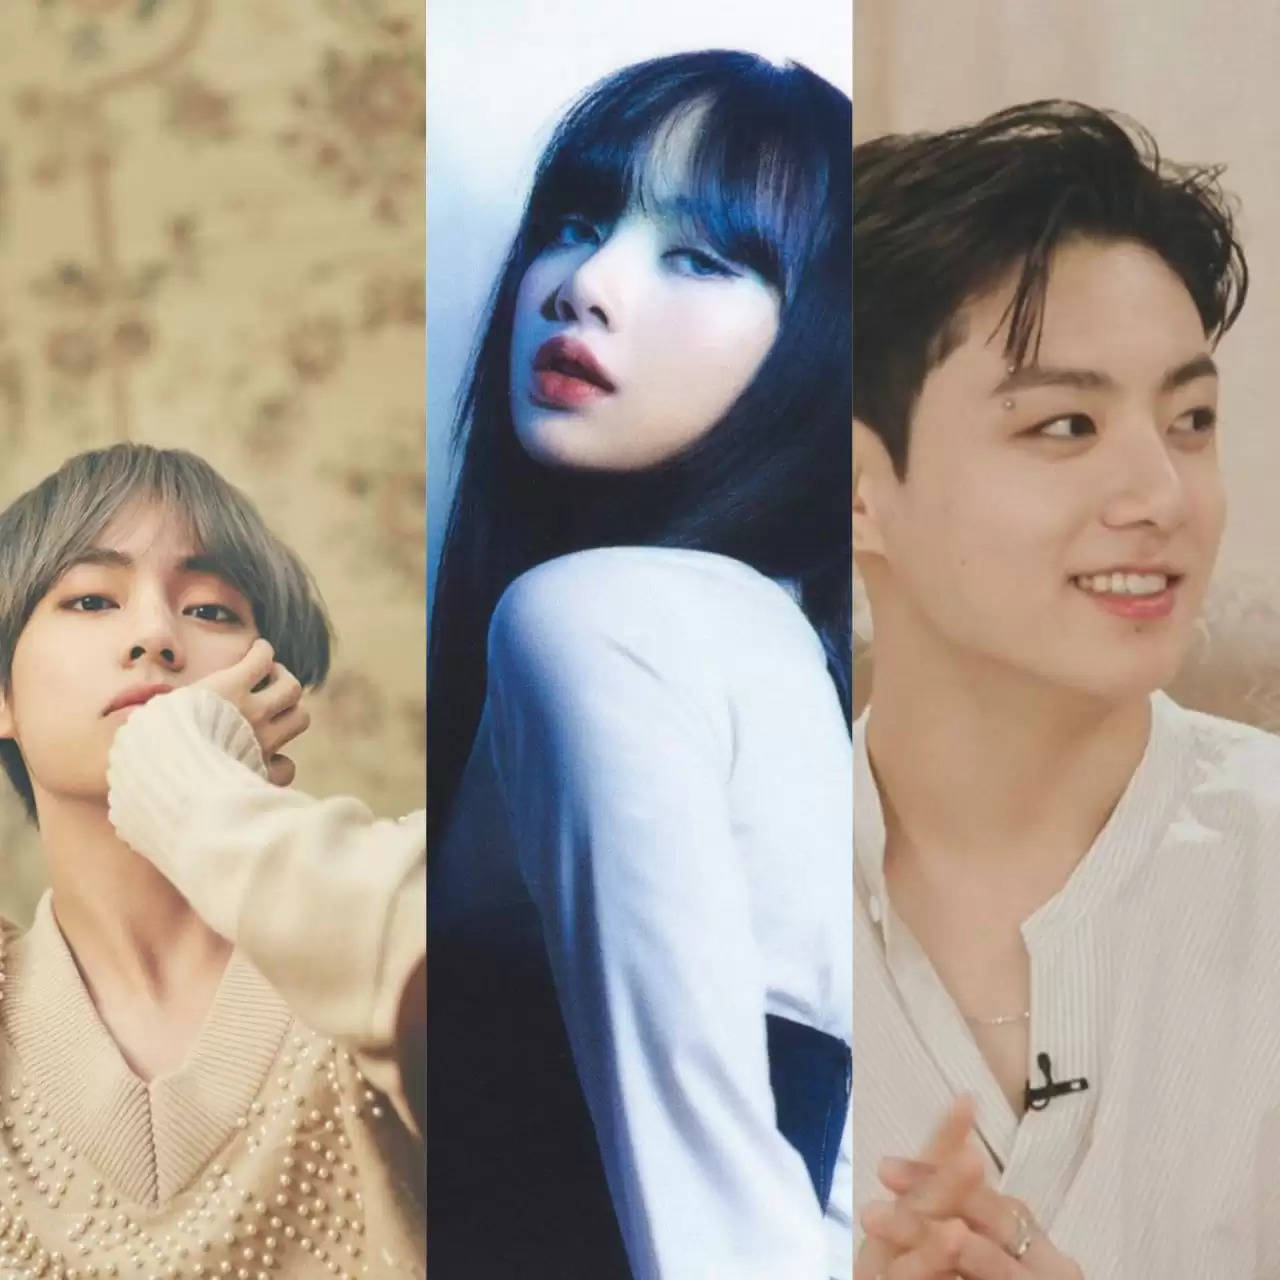 Top 5 most famous K-Pop Idols In 2022